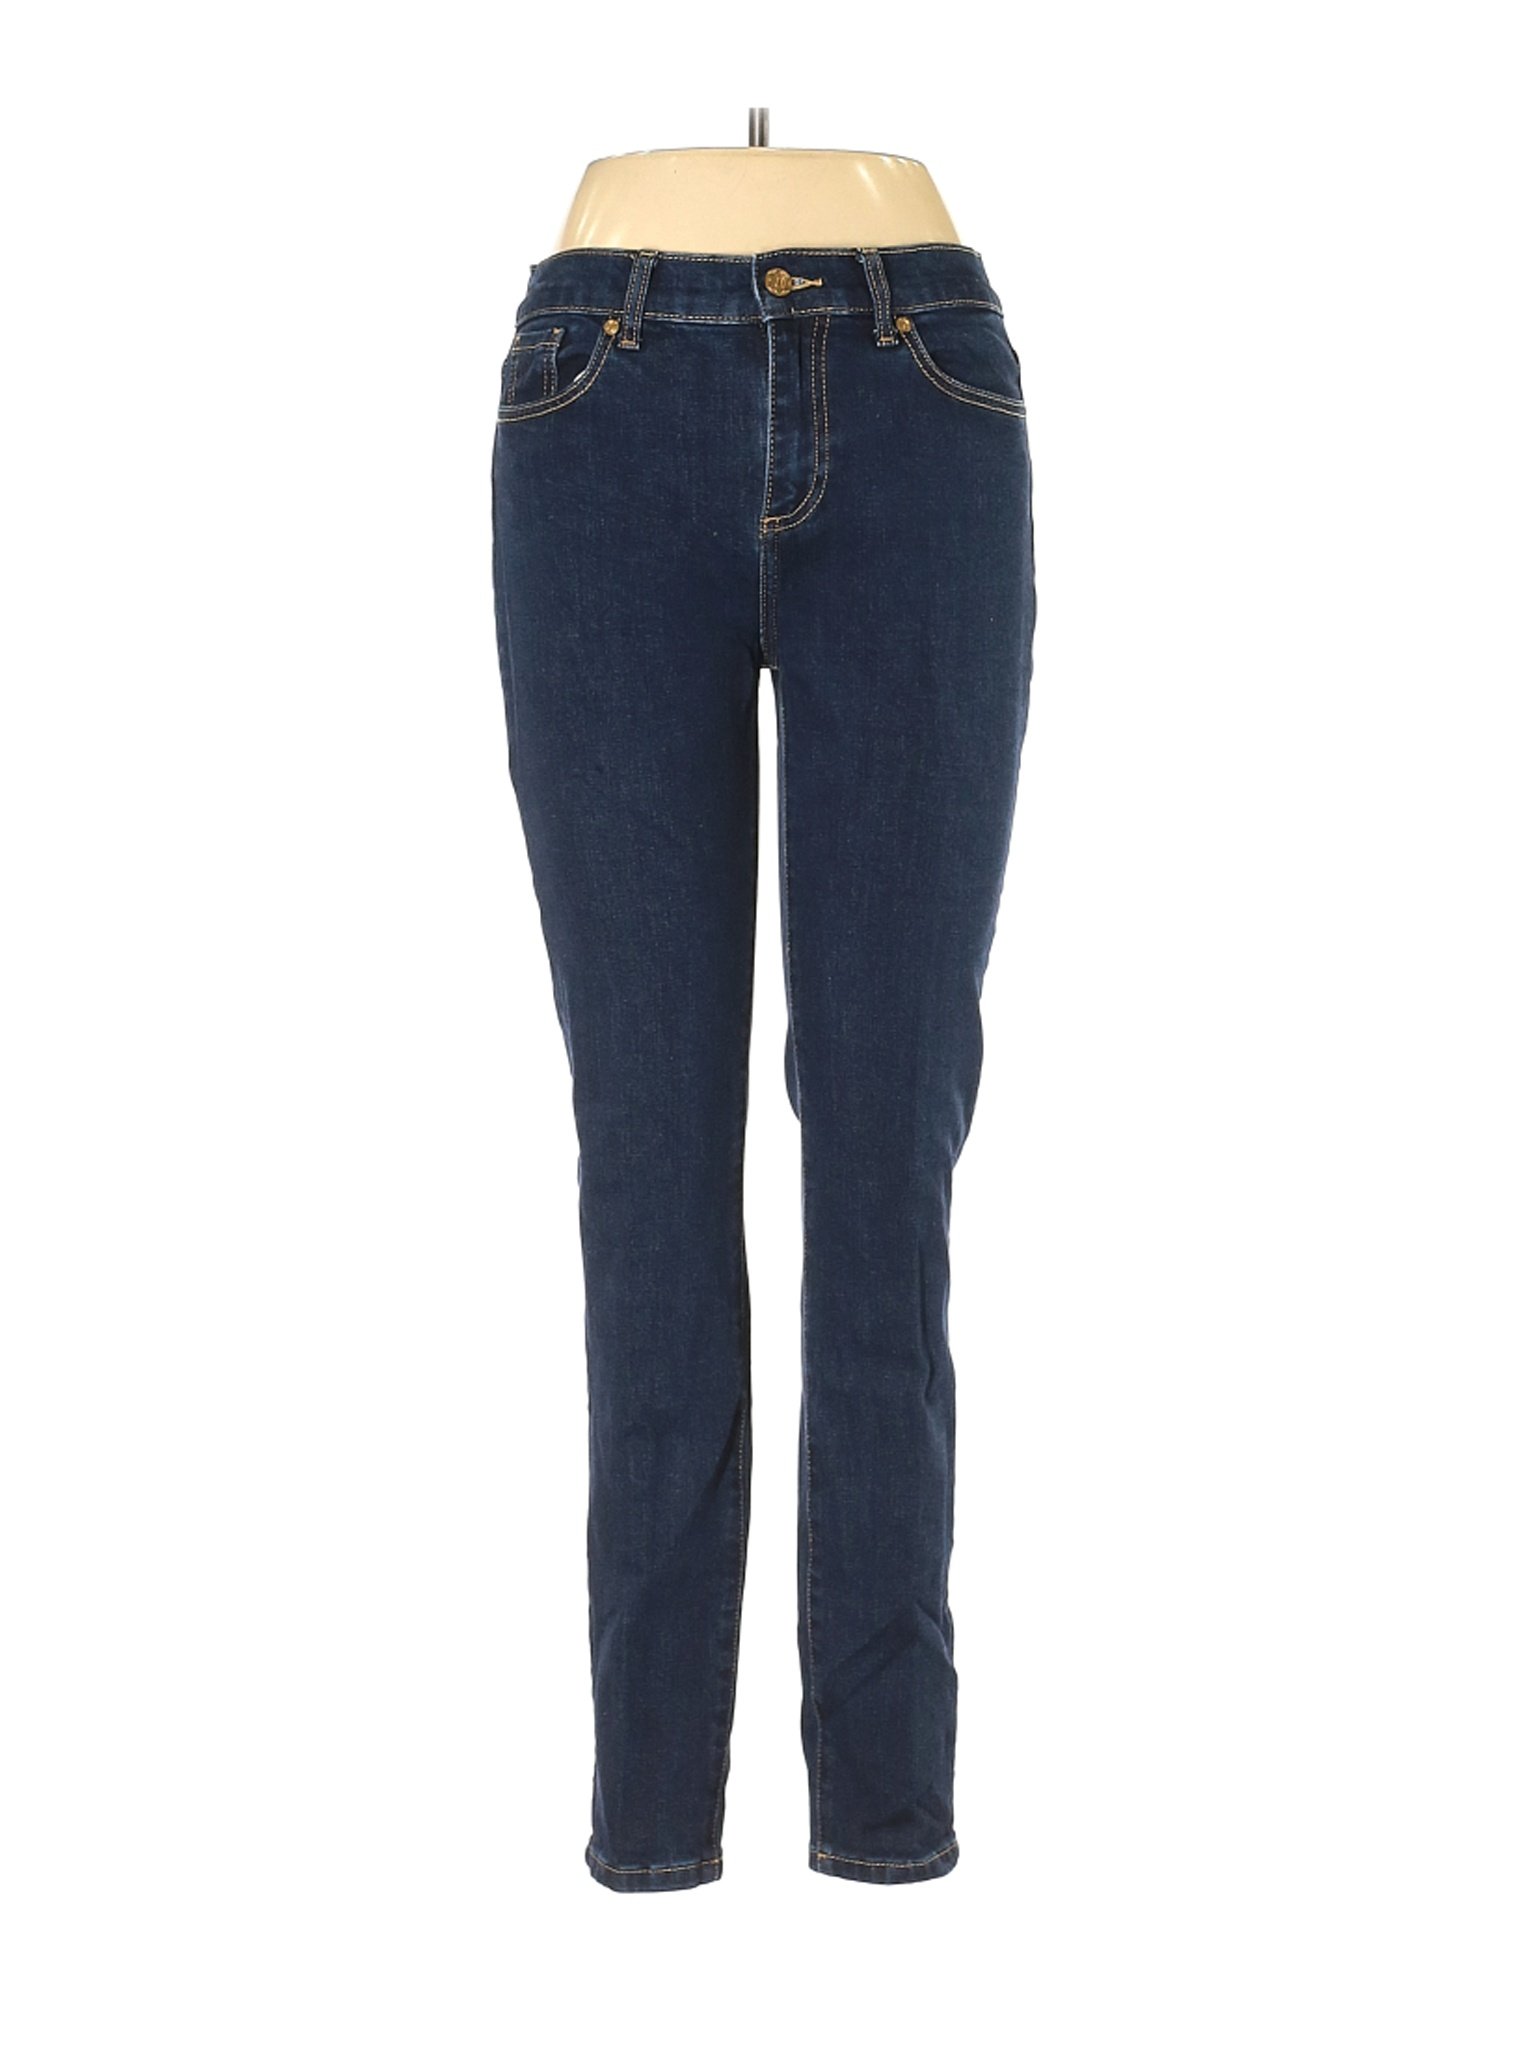 Draper James Women Blue Jeans 28W | eBay